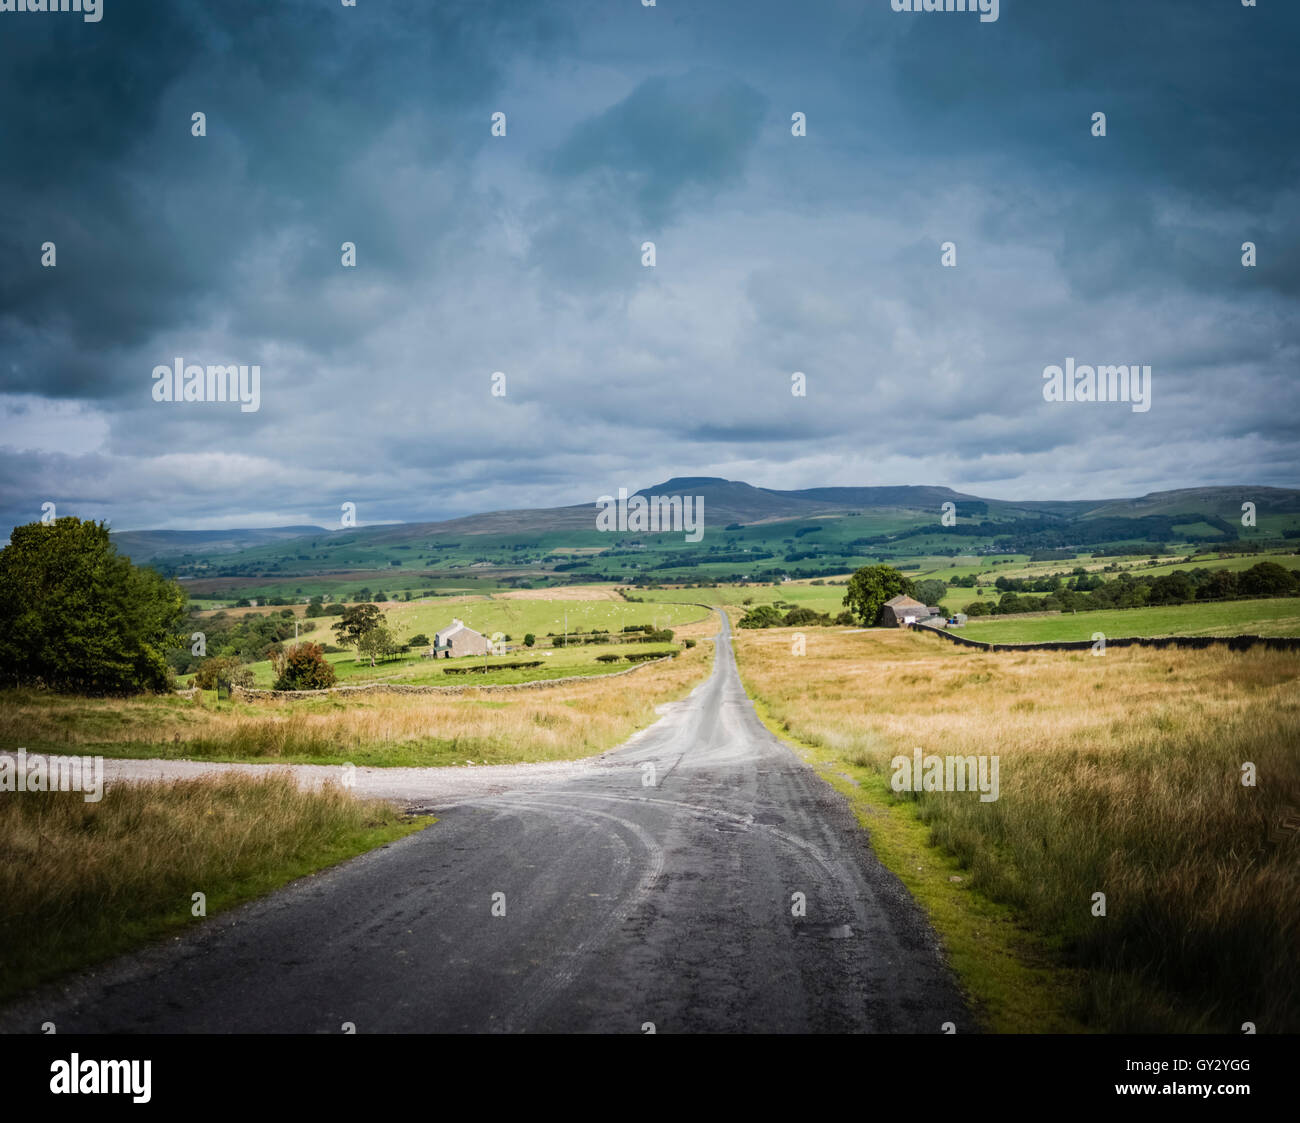 The road to Ingleborough, Lancashire / Yorkshire county boundary, north west England, UK. Stock Photo